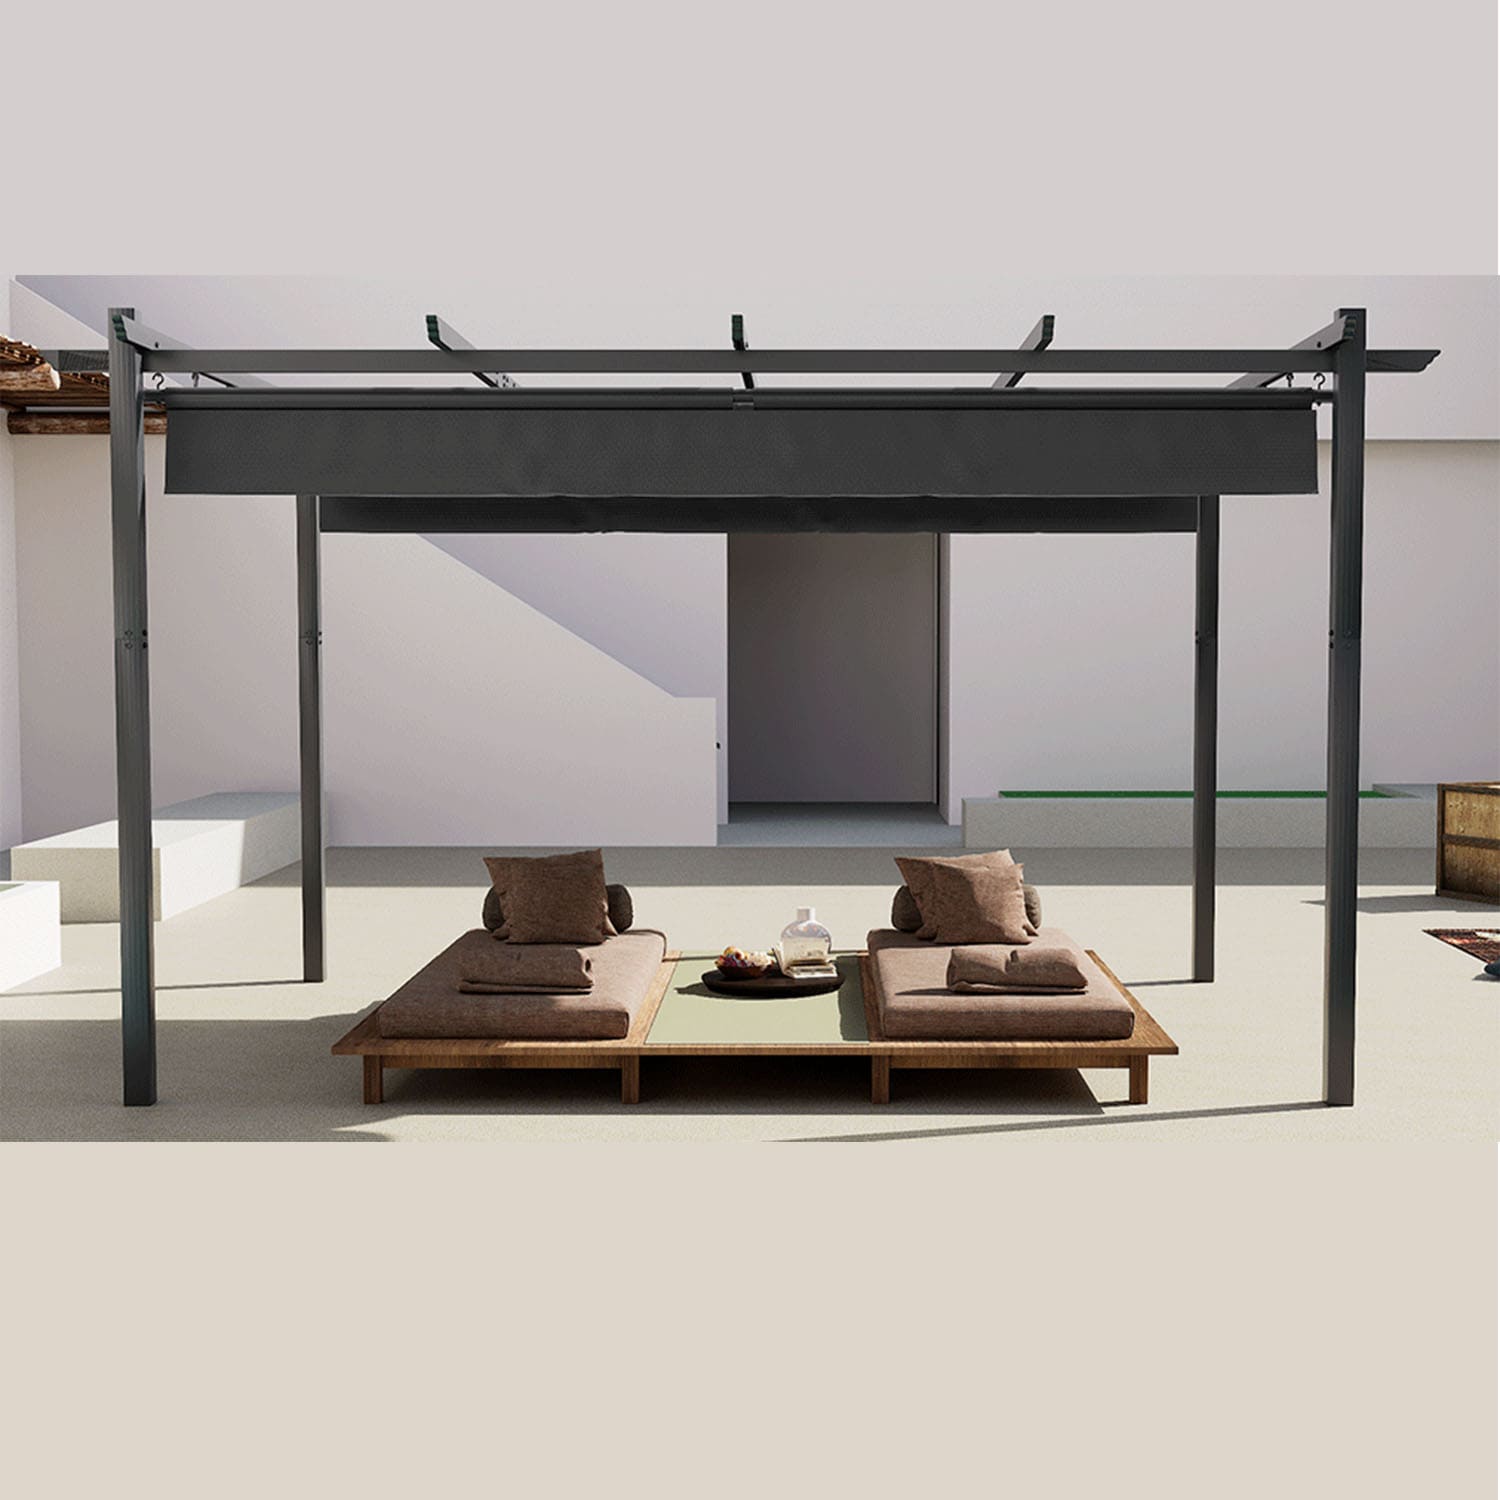 Pergola Gartenpavillon Wasserdicht mit verstellbarem Dach